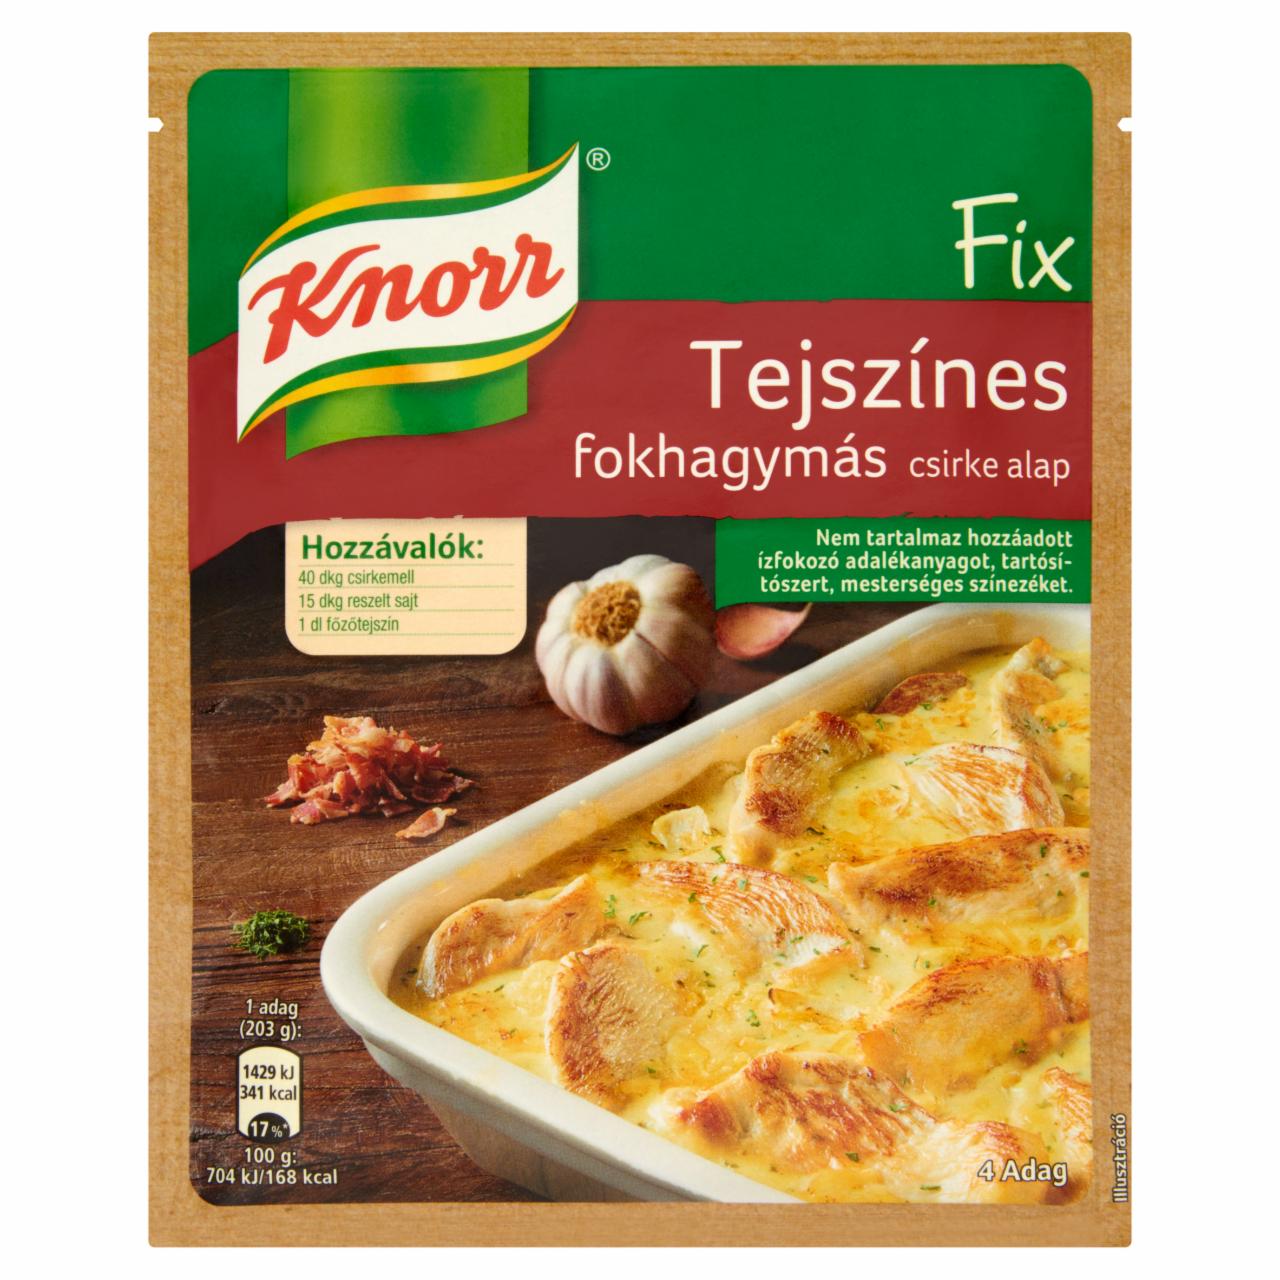 Képek - Knorr tejszínes fokhagymás csirke alap 47 g